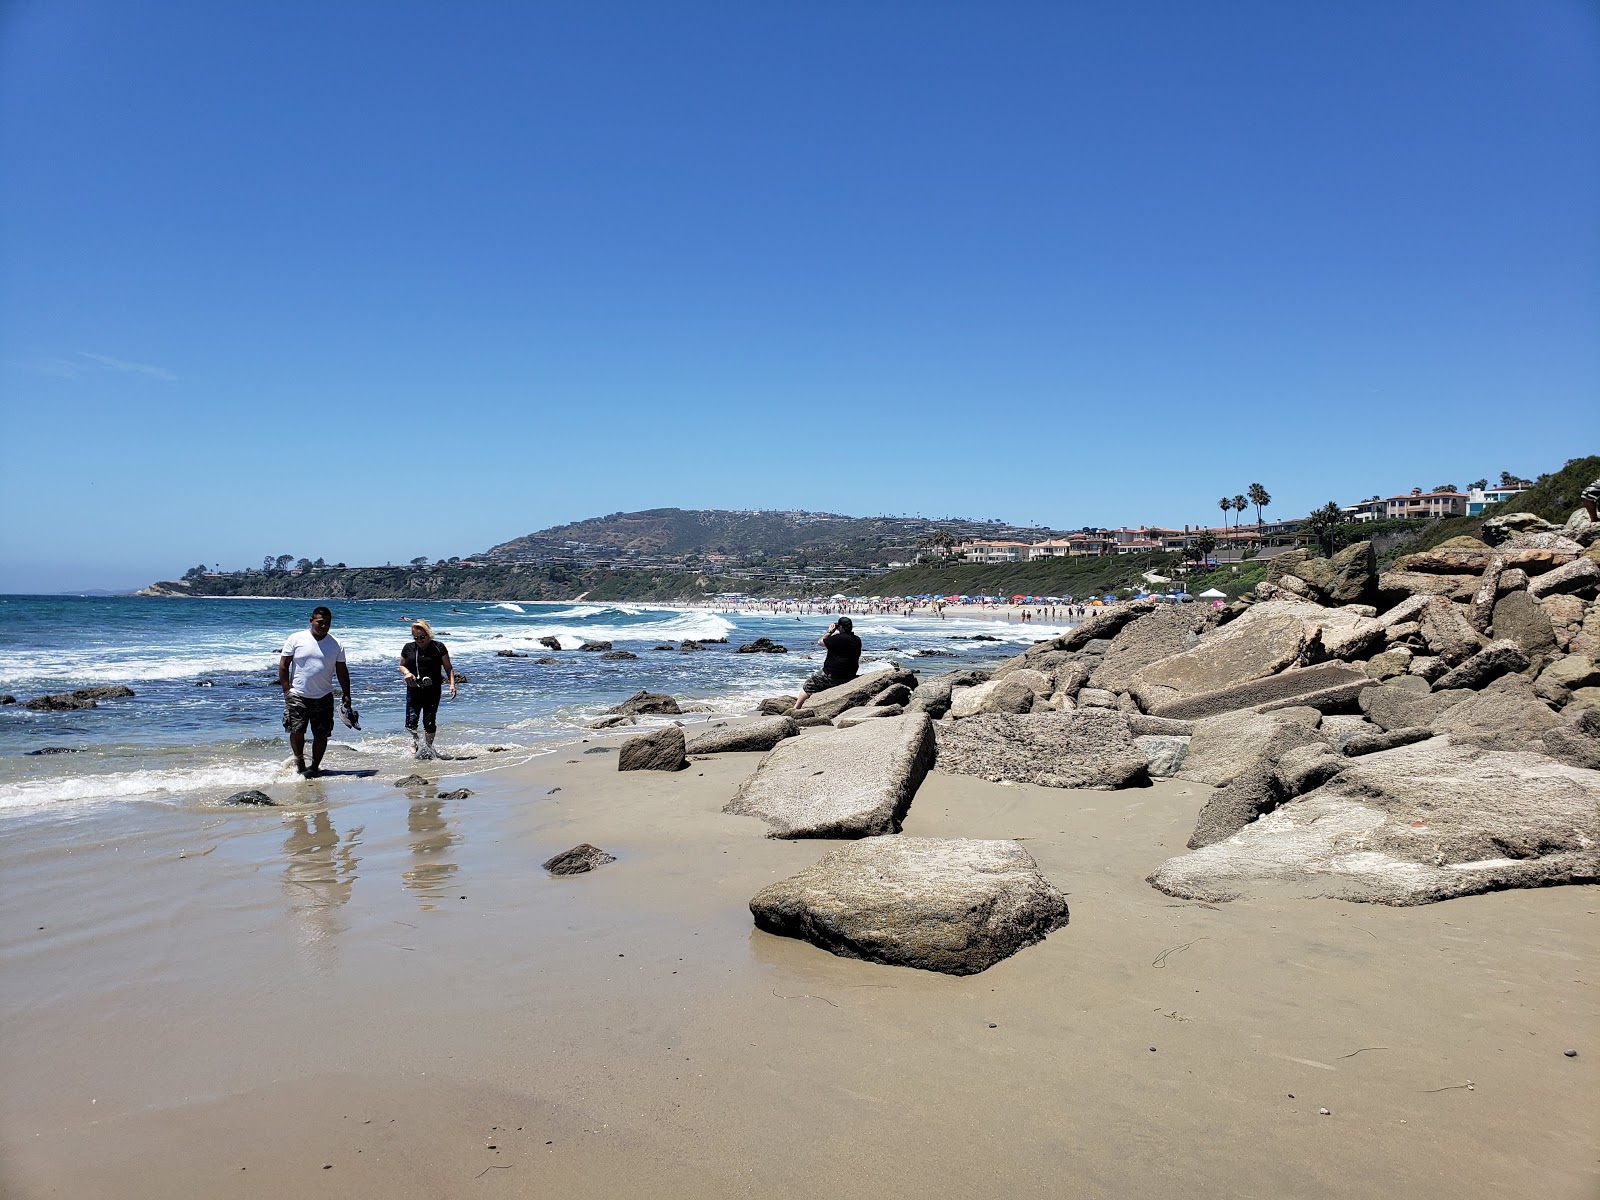 Photo de Dana Strands beach - endroit populaire parmi les connaisseurs de la détente